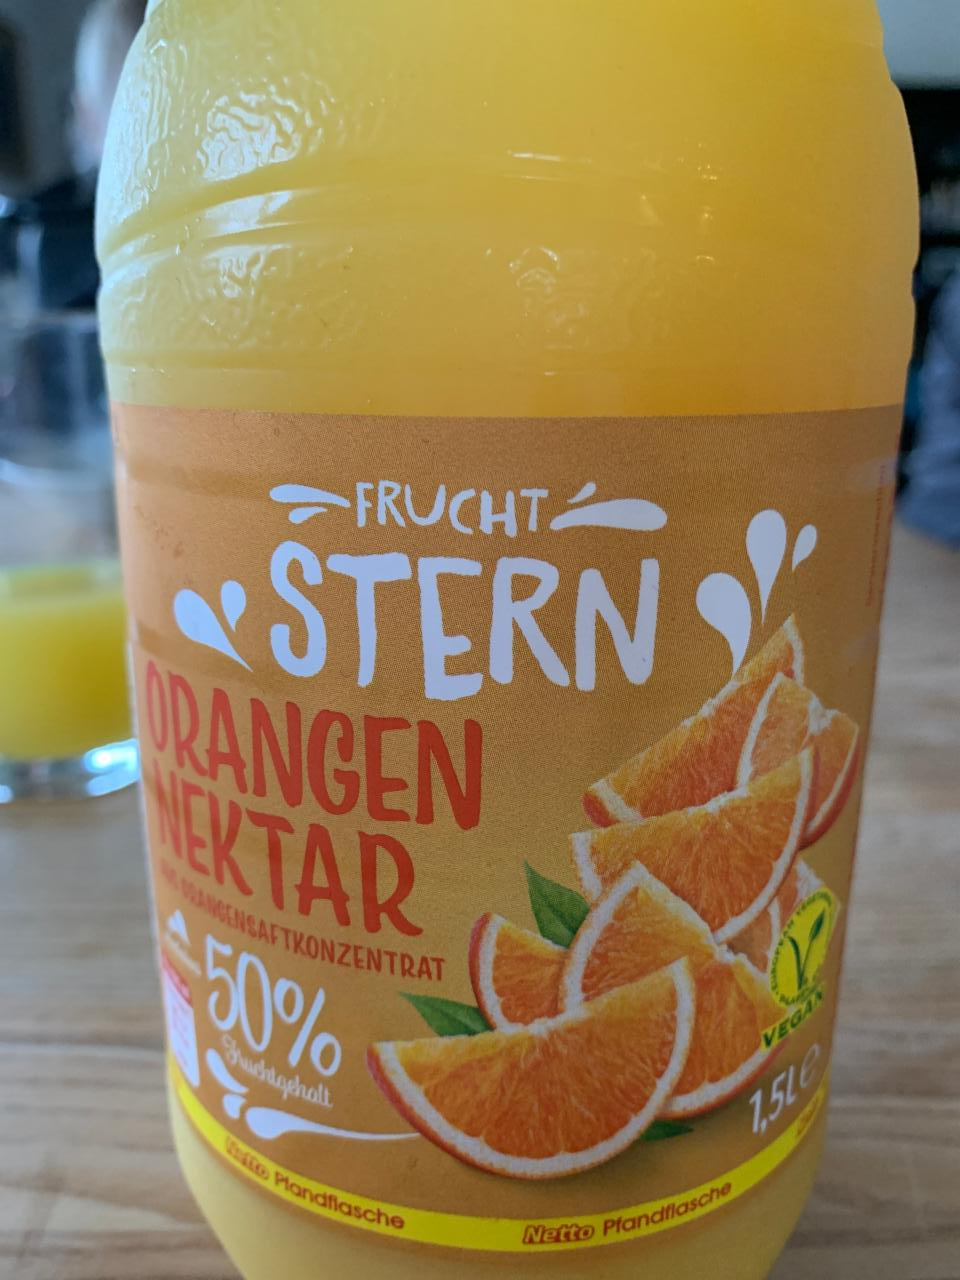 Fotografie - Orangen nektar Frucht Stern